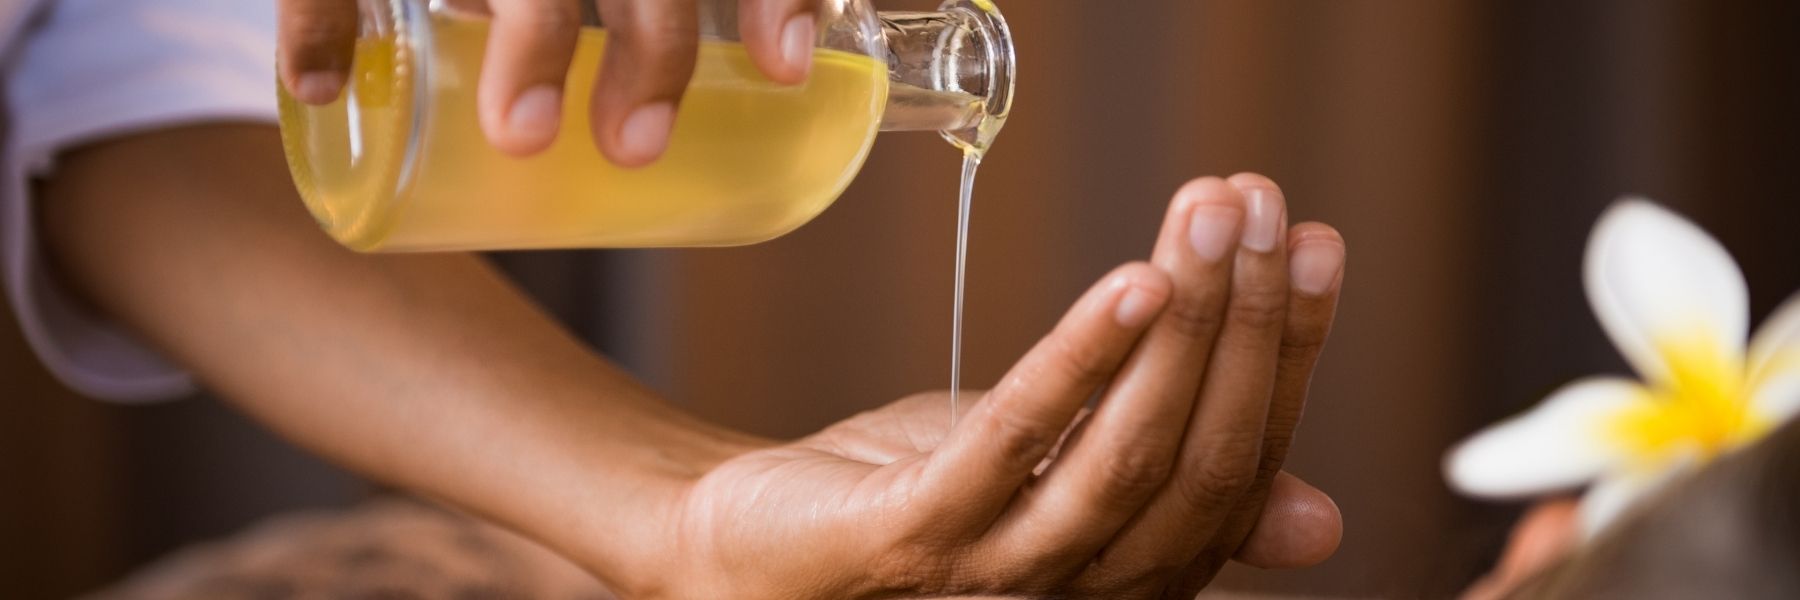 Huiles à massage : 3 recettes à base d’huile d’amande douce